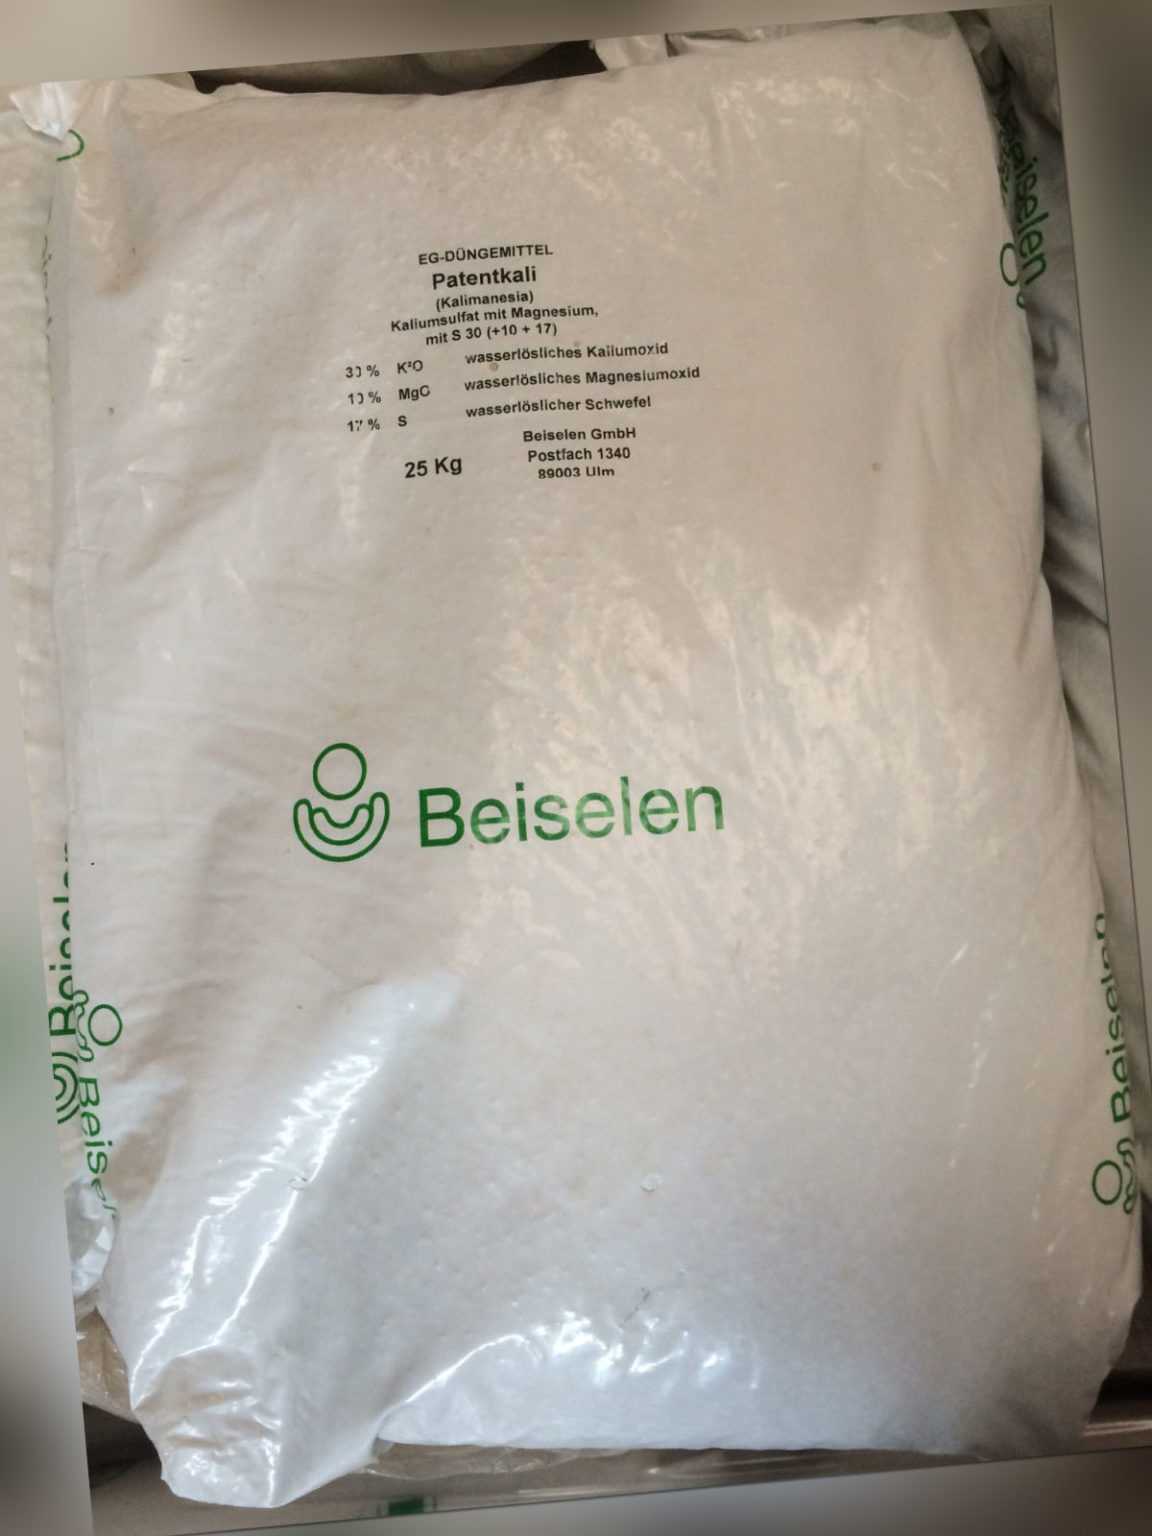 Patentkali - Kalimagnesia 25 kg Herbstdünger Kalium Magnesium Schwefel